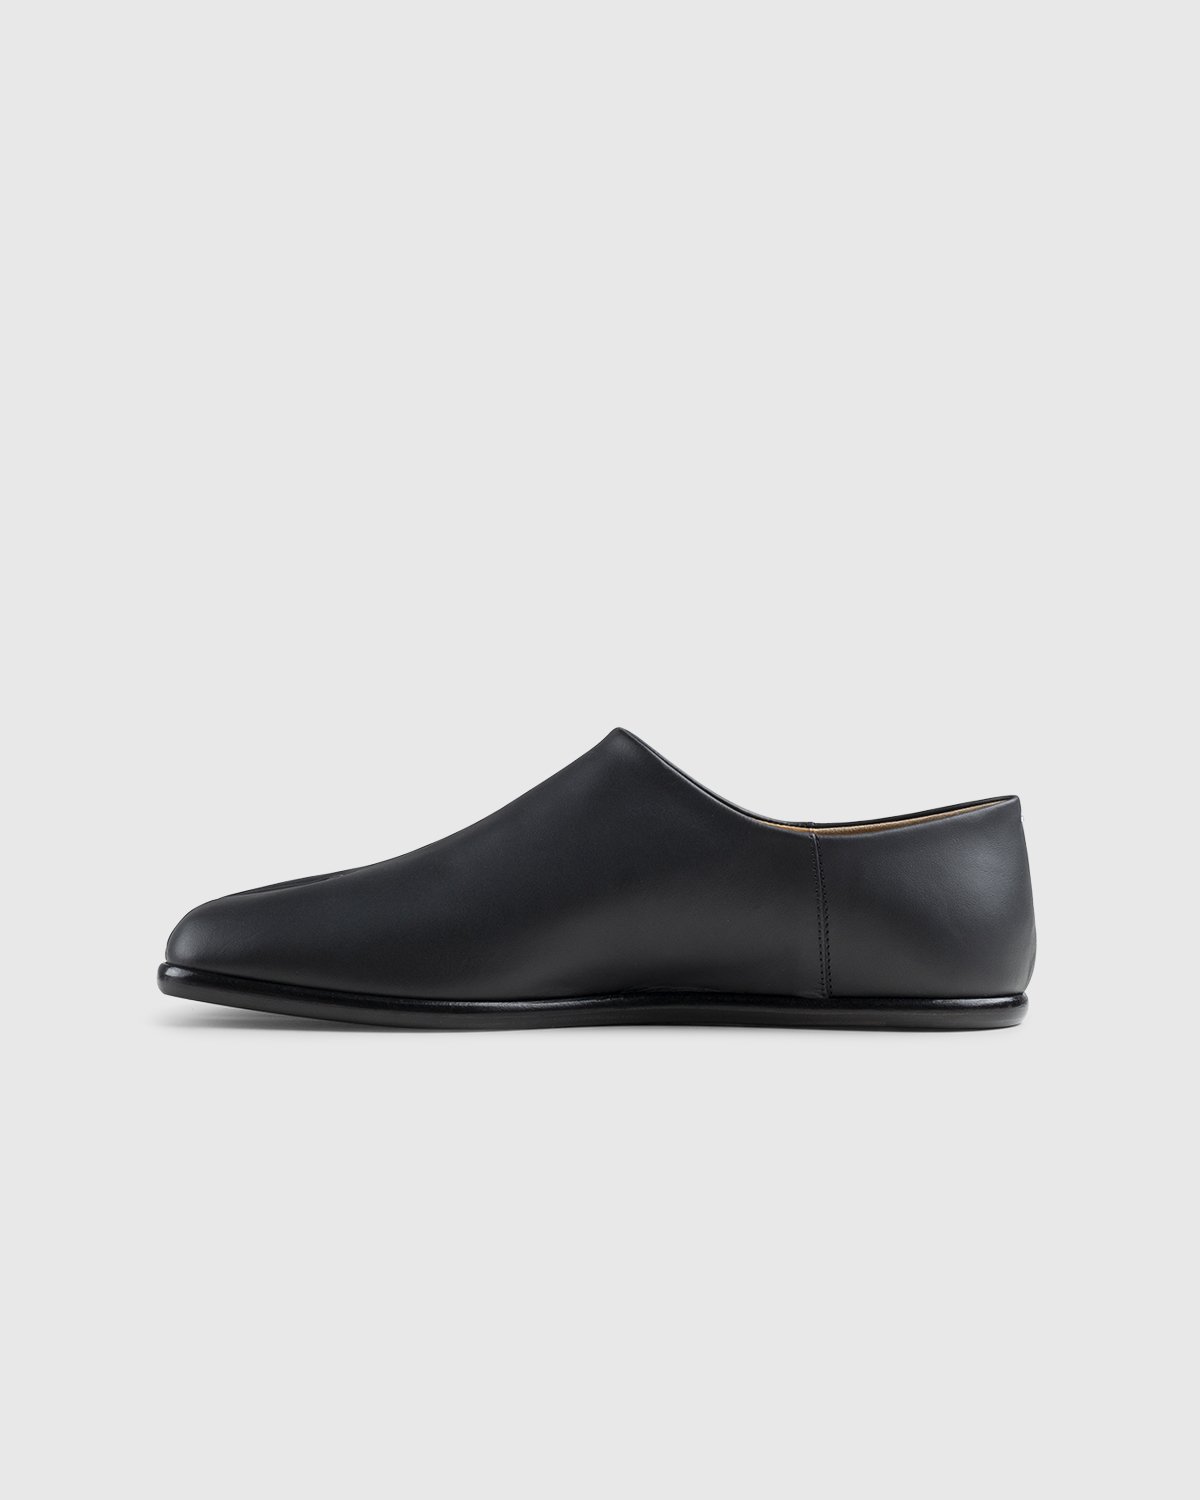 Maison Margiela - Tabi Slip On Black - Footwear - Black - Image 2